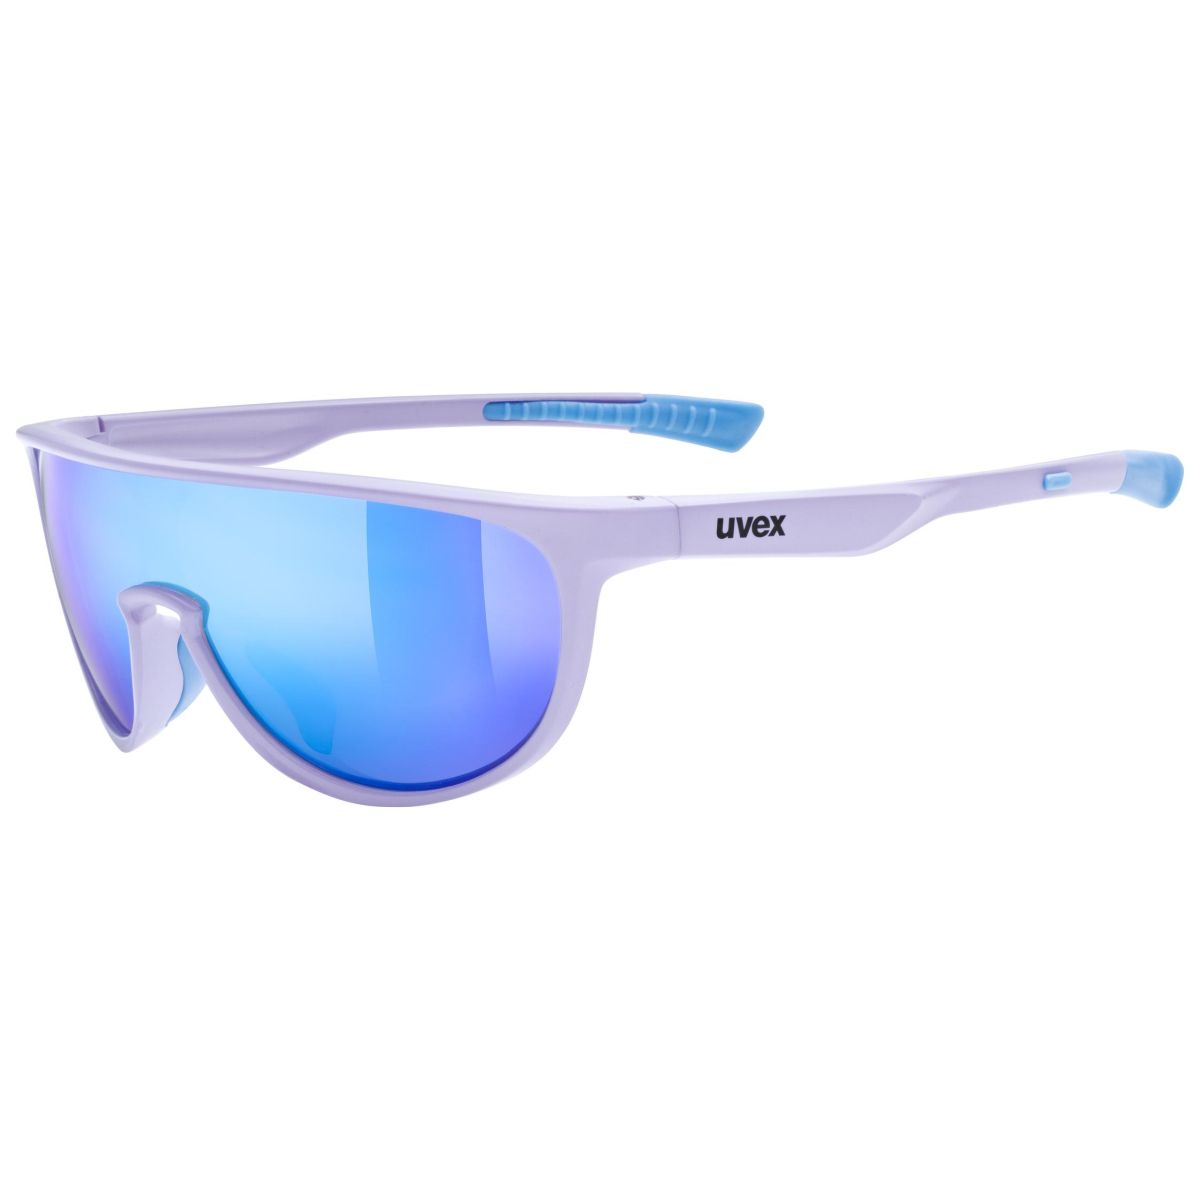 Produktbild von Uvex sportstyle 515 Kinderbrille - lavender matt/mirror blue